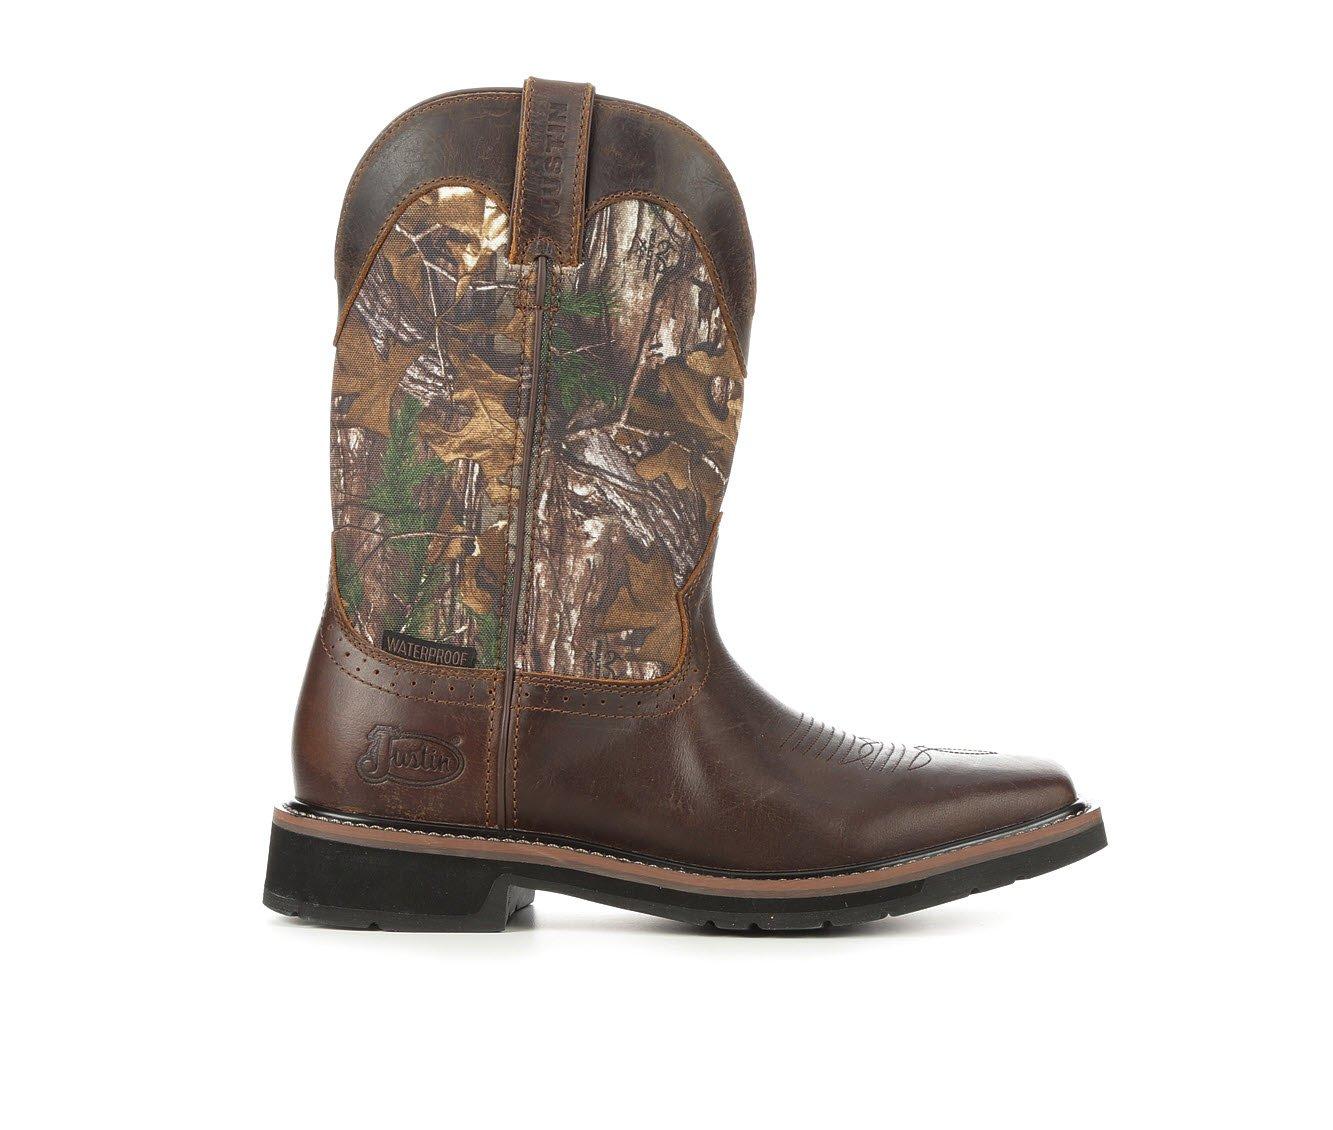 Men's Justin Boots SE4676 Stampede Cowboy Boots